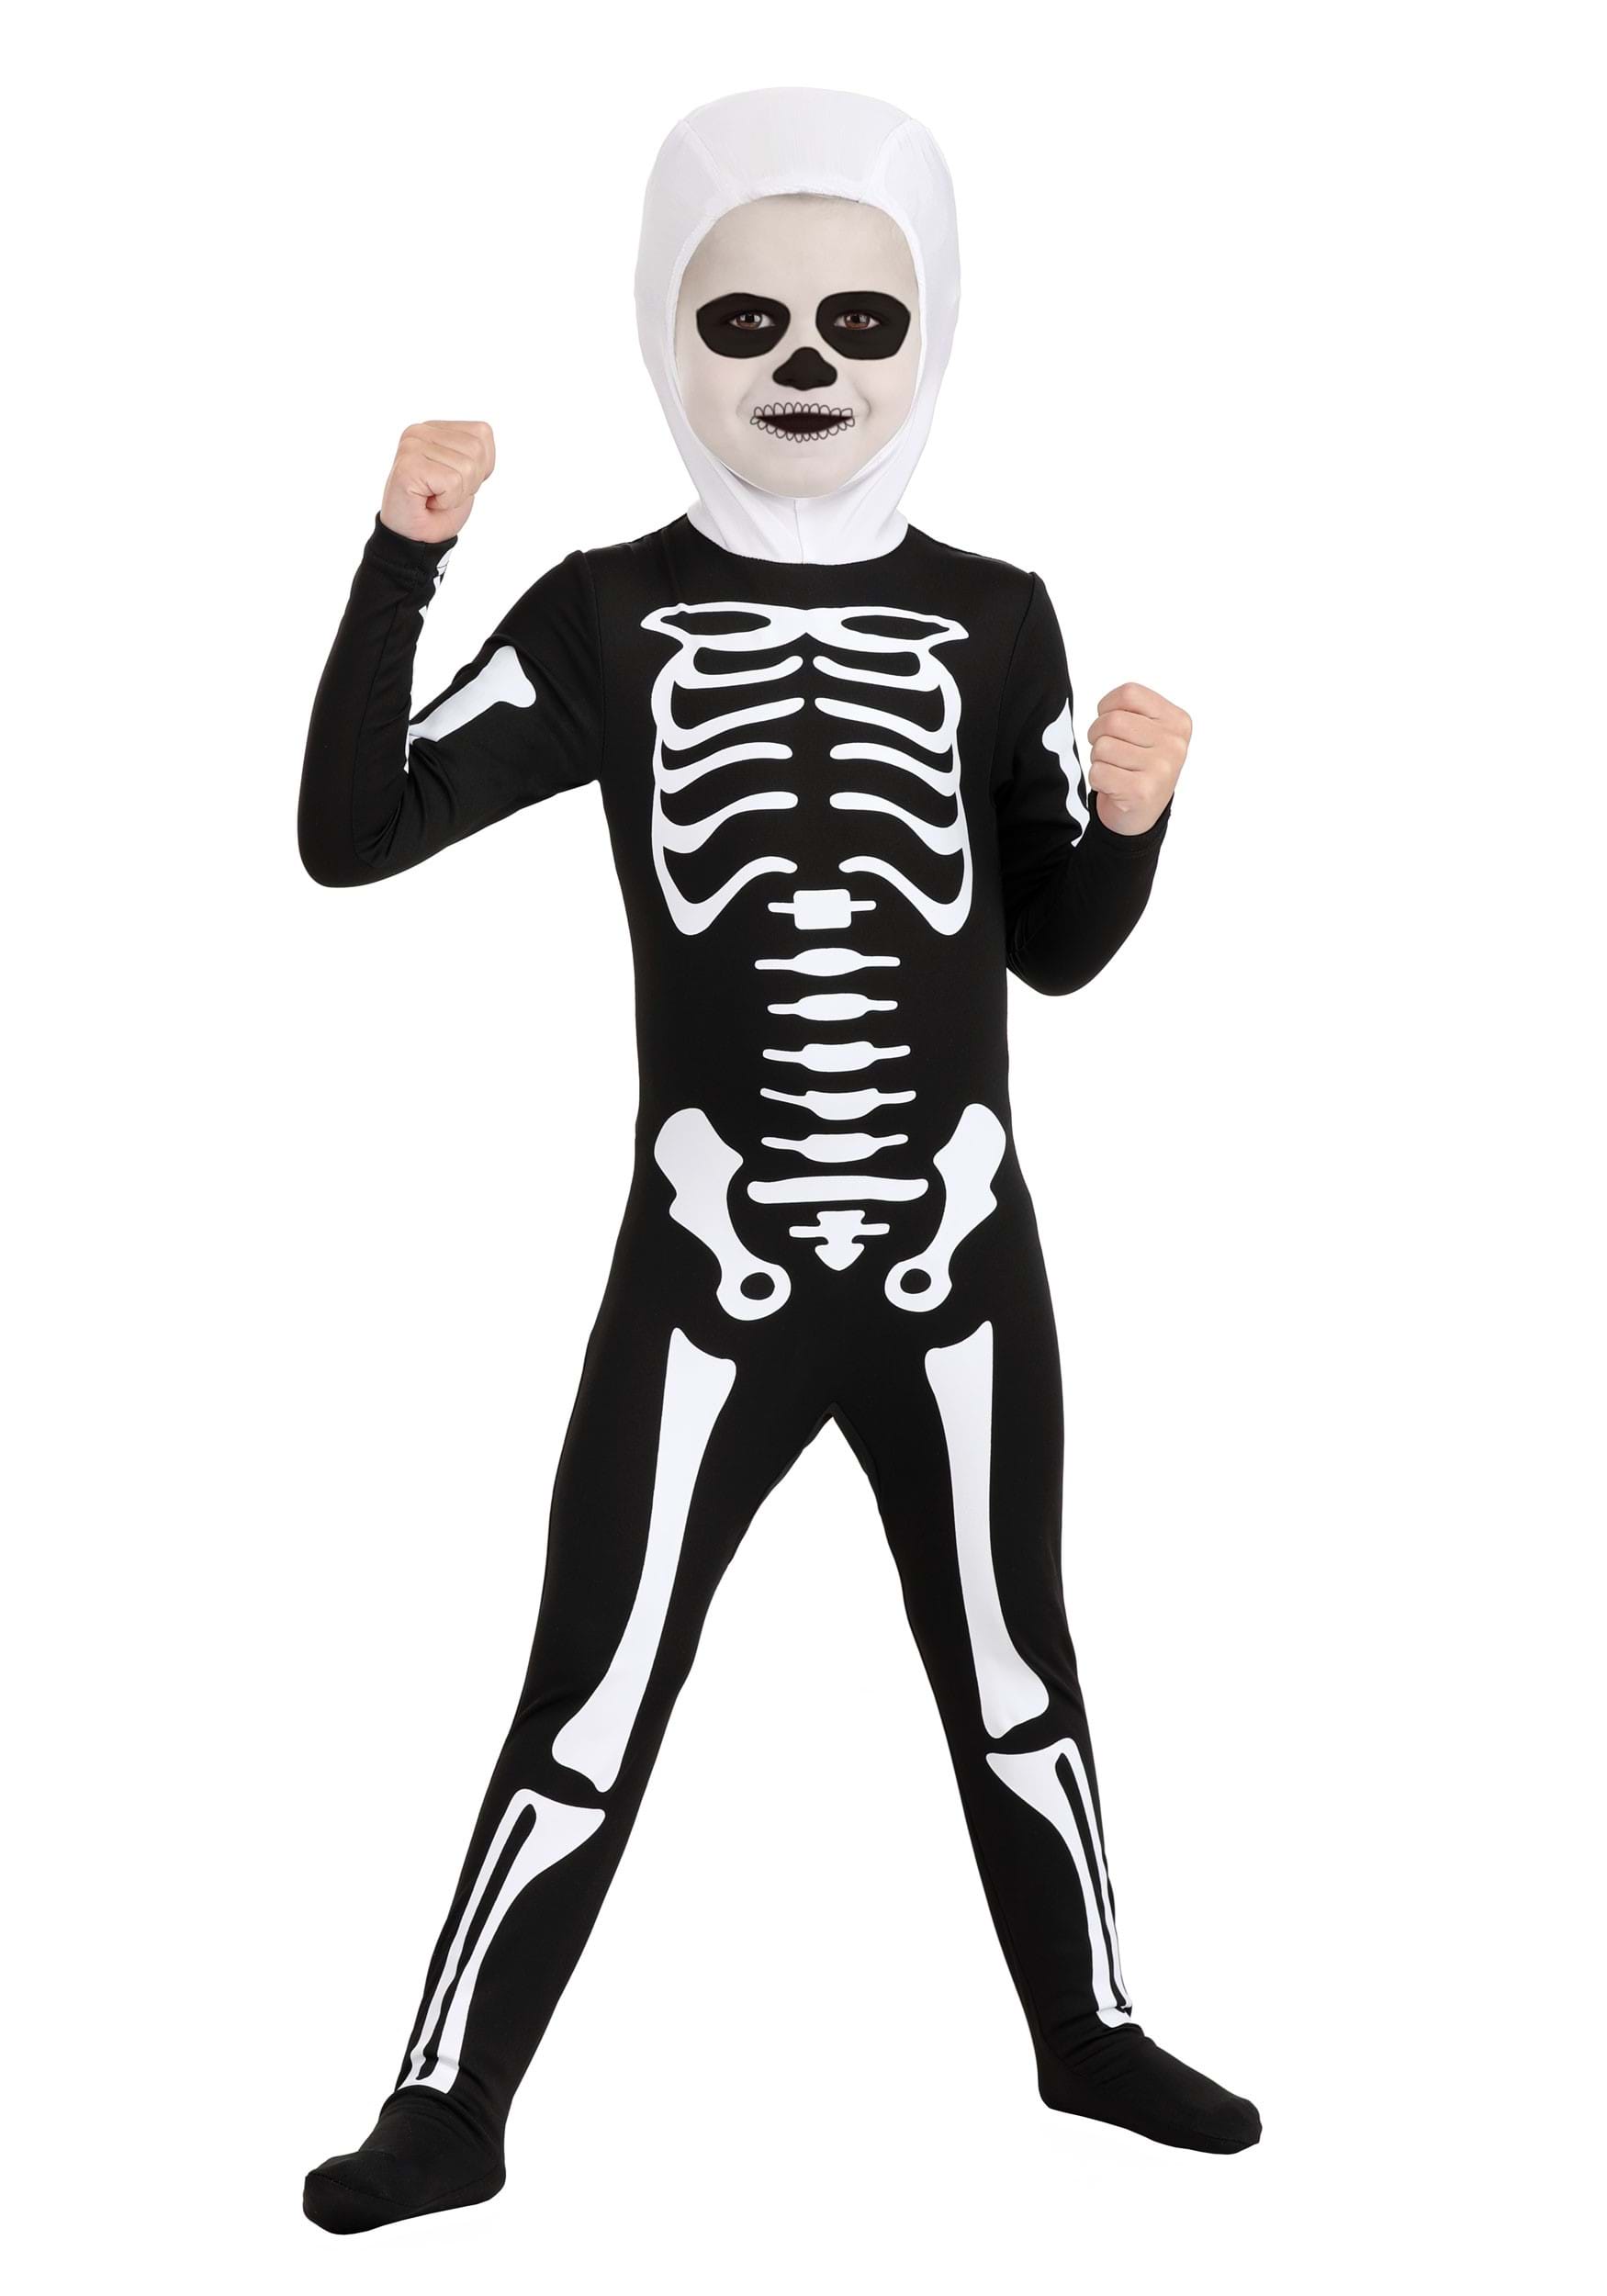 Photos - Fancy Dress KID FUN Costumes Toddler Karate  Skeleton Suit Costume Black/White KAR2 